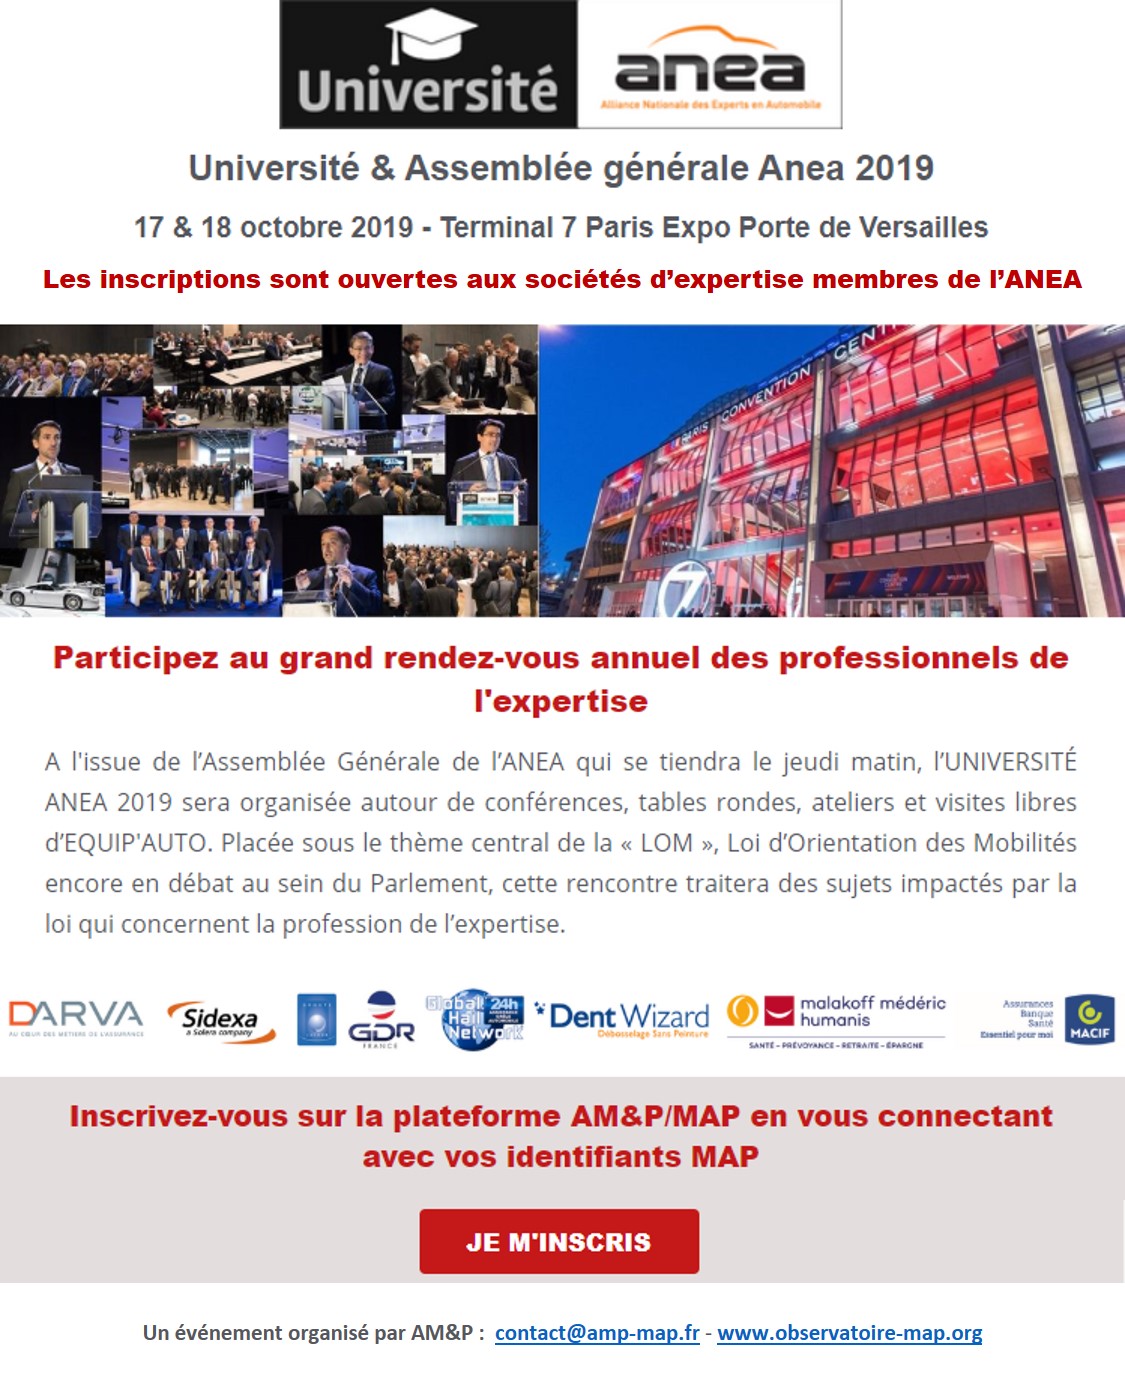 Université Anea 2019 les 17 et 18 octobre Paris Expo Porte de Versailles